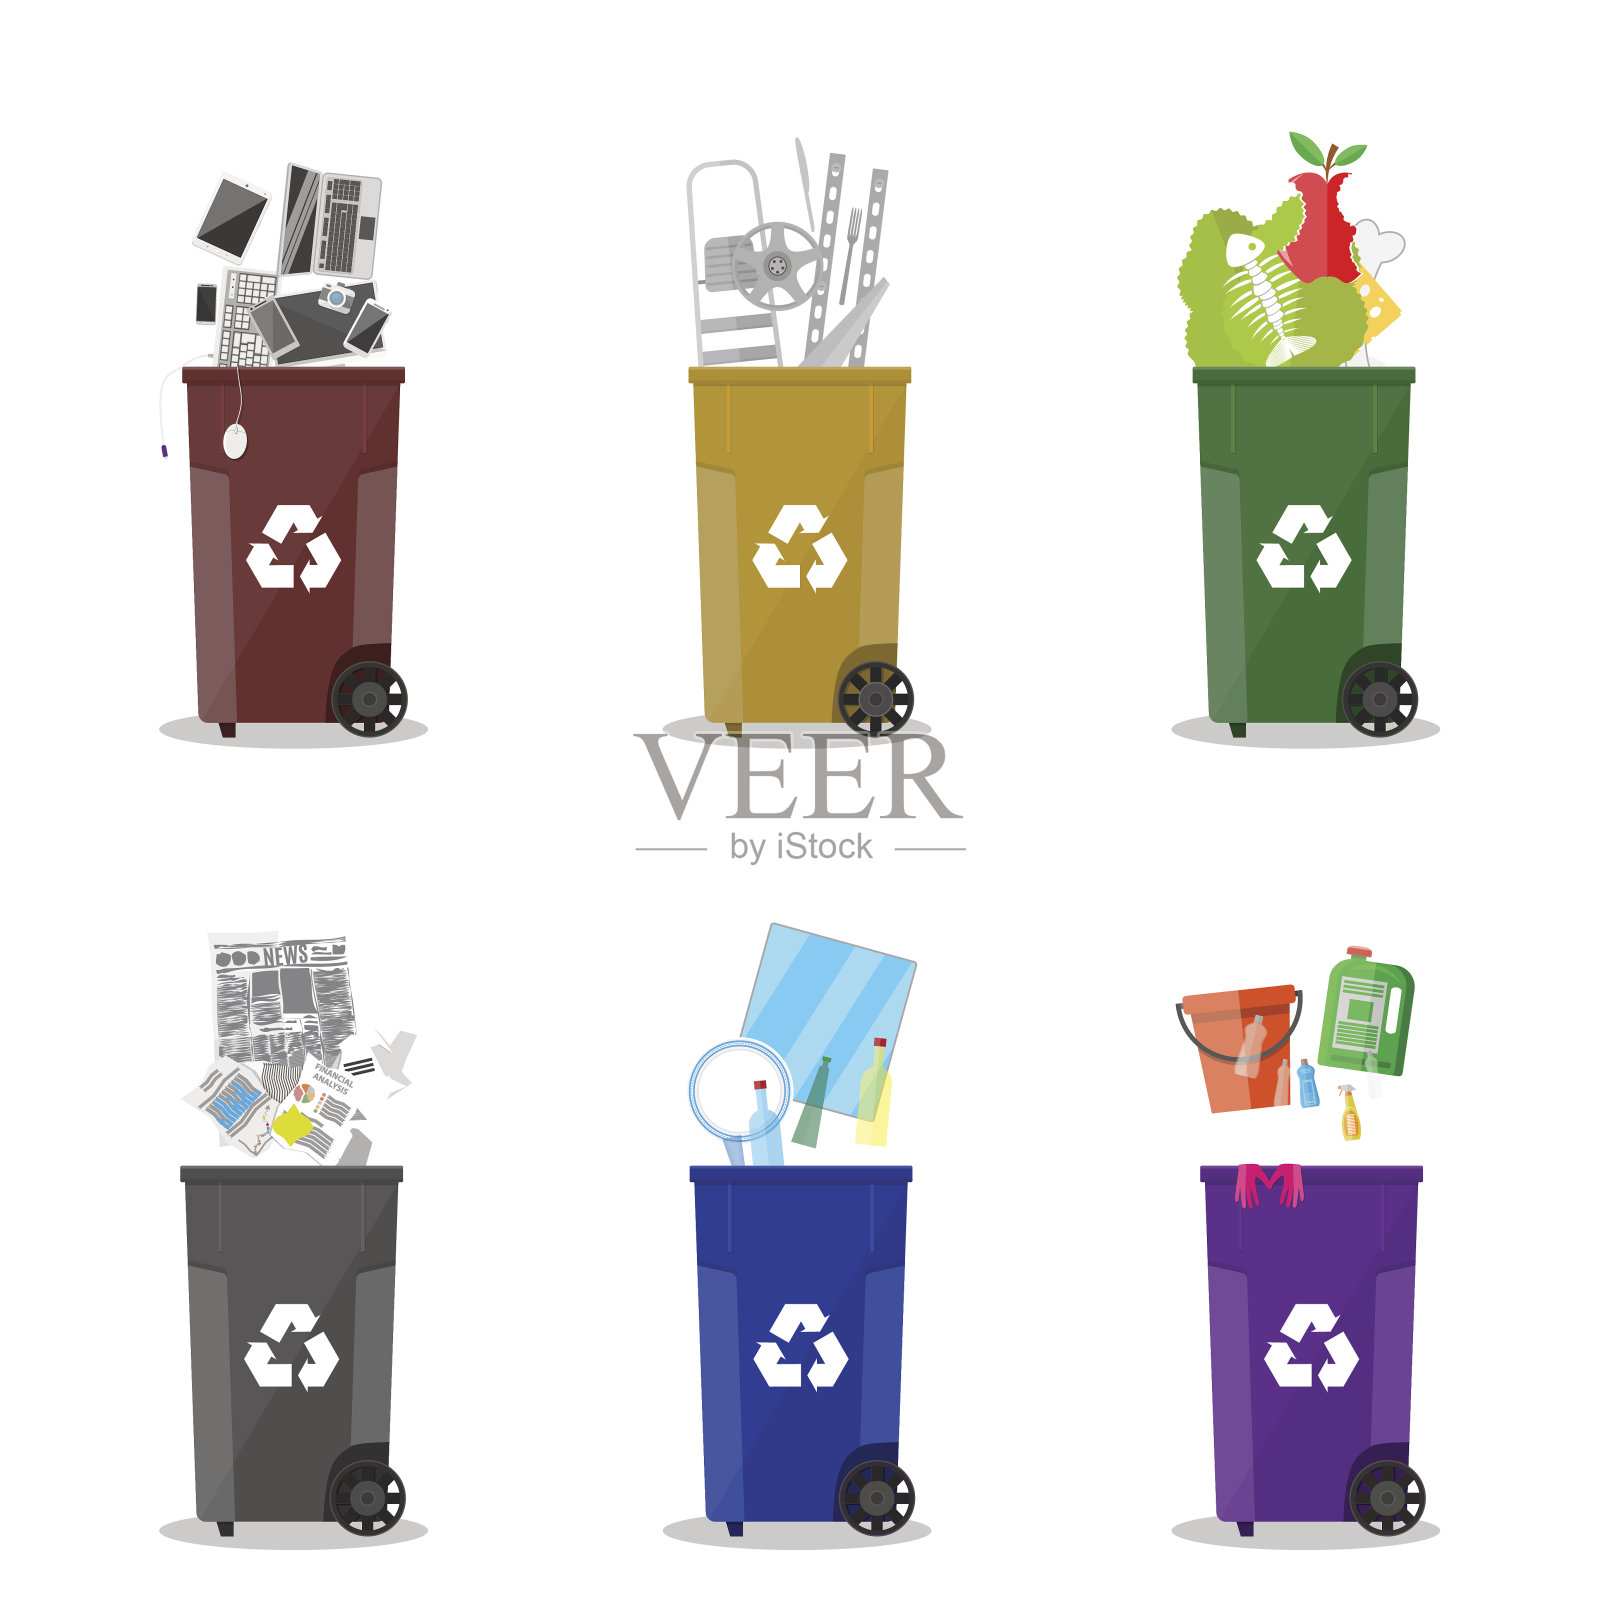 不同的废物回收类别。垃圾桶设计元素图片